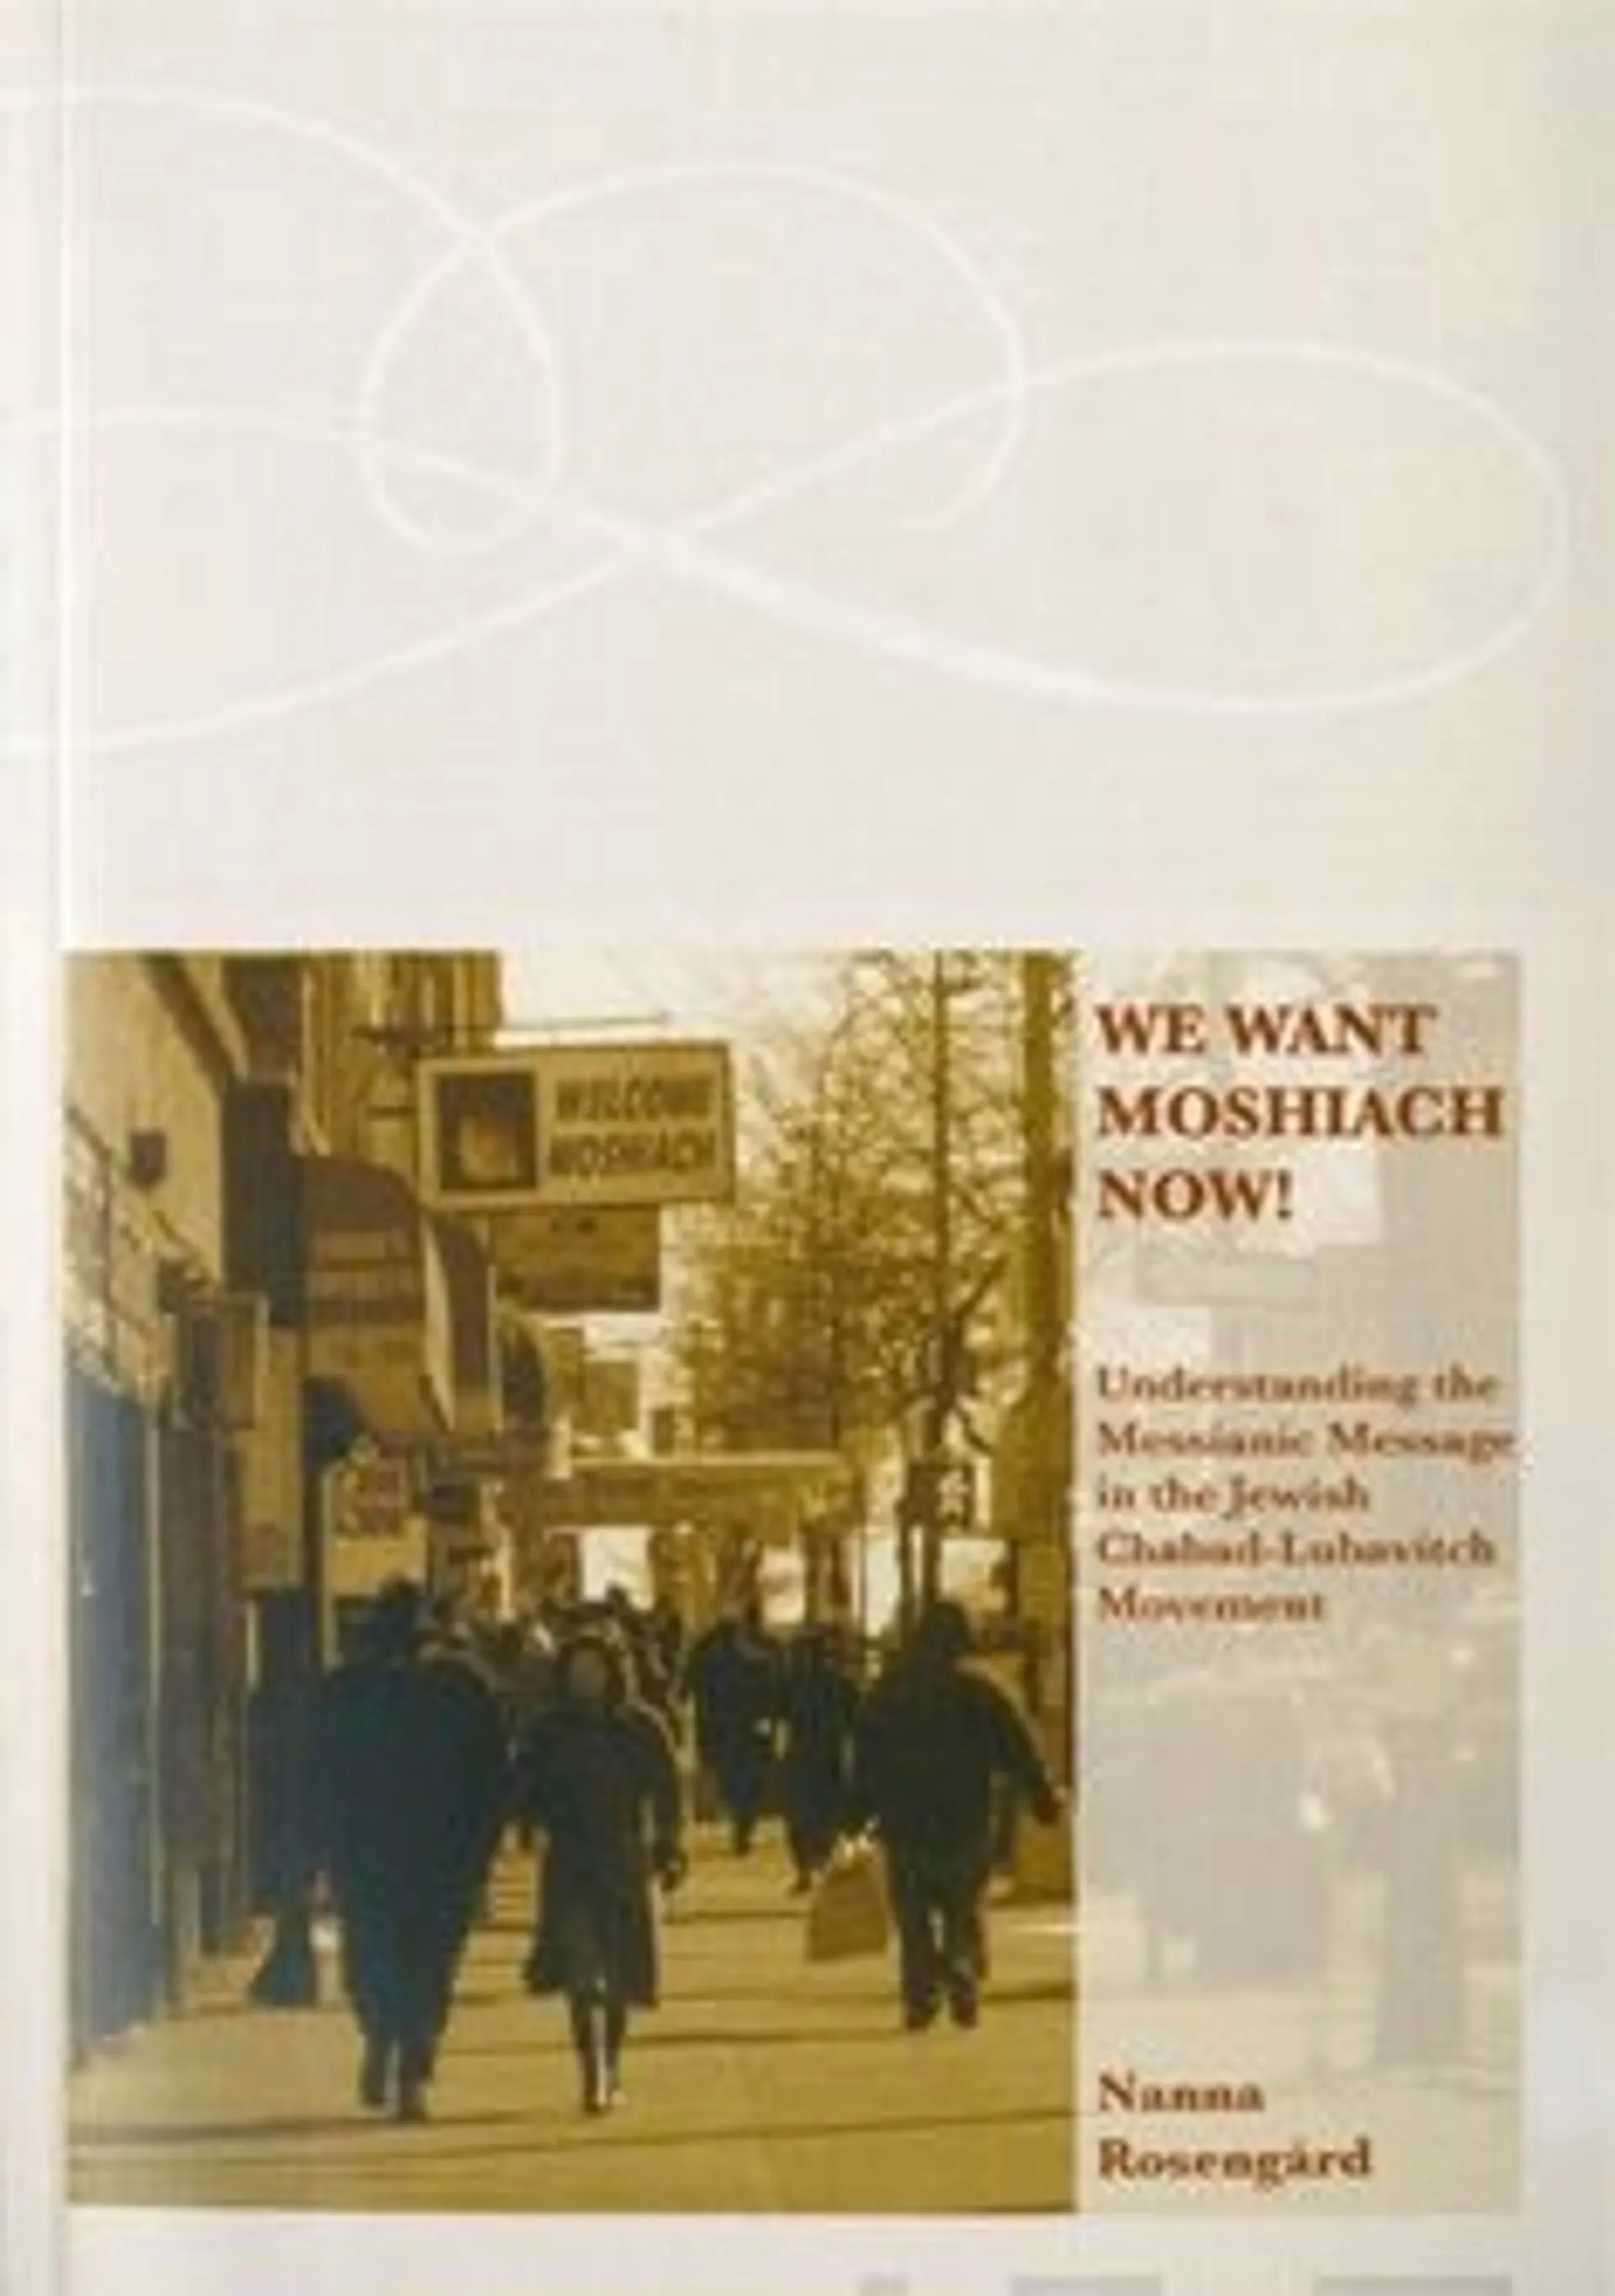 Rosengård, We want moshiach now!